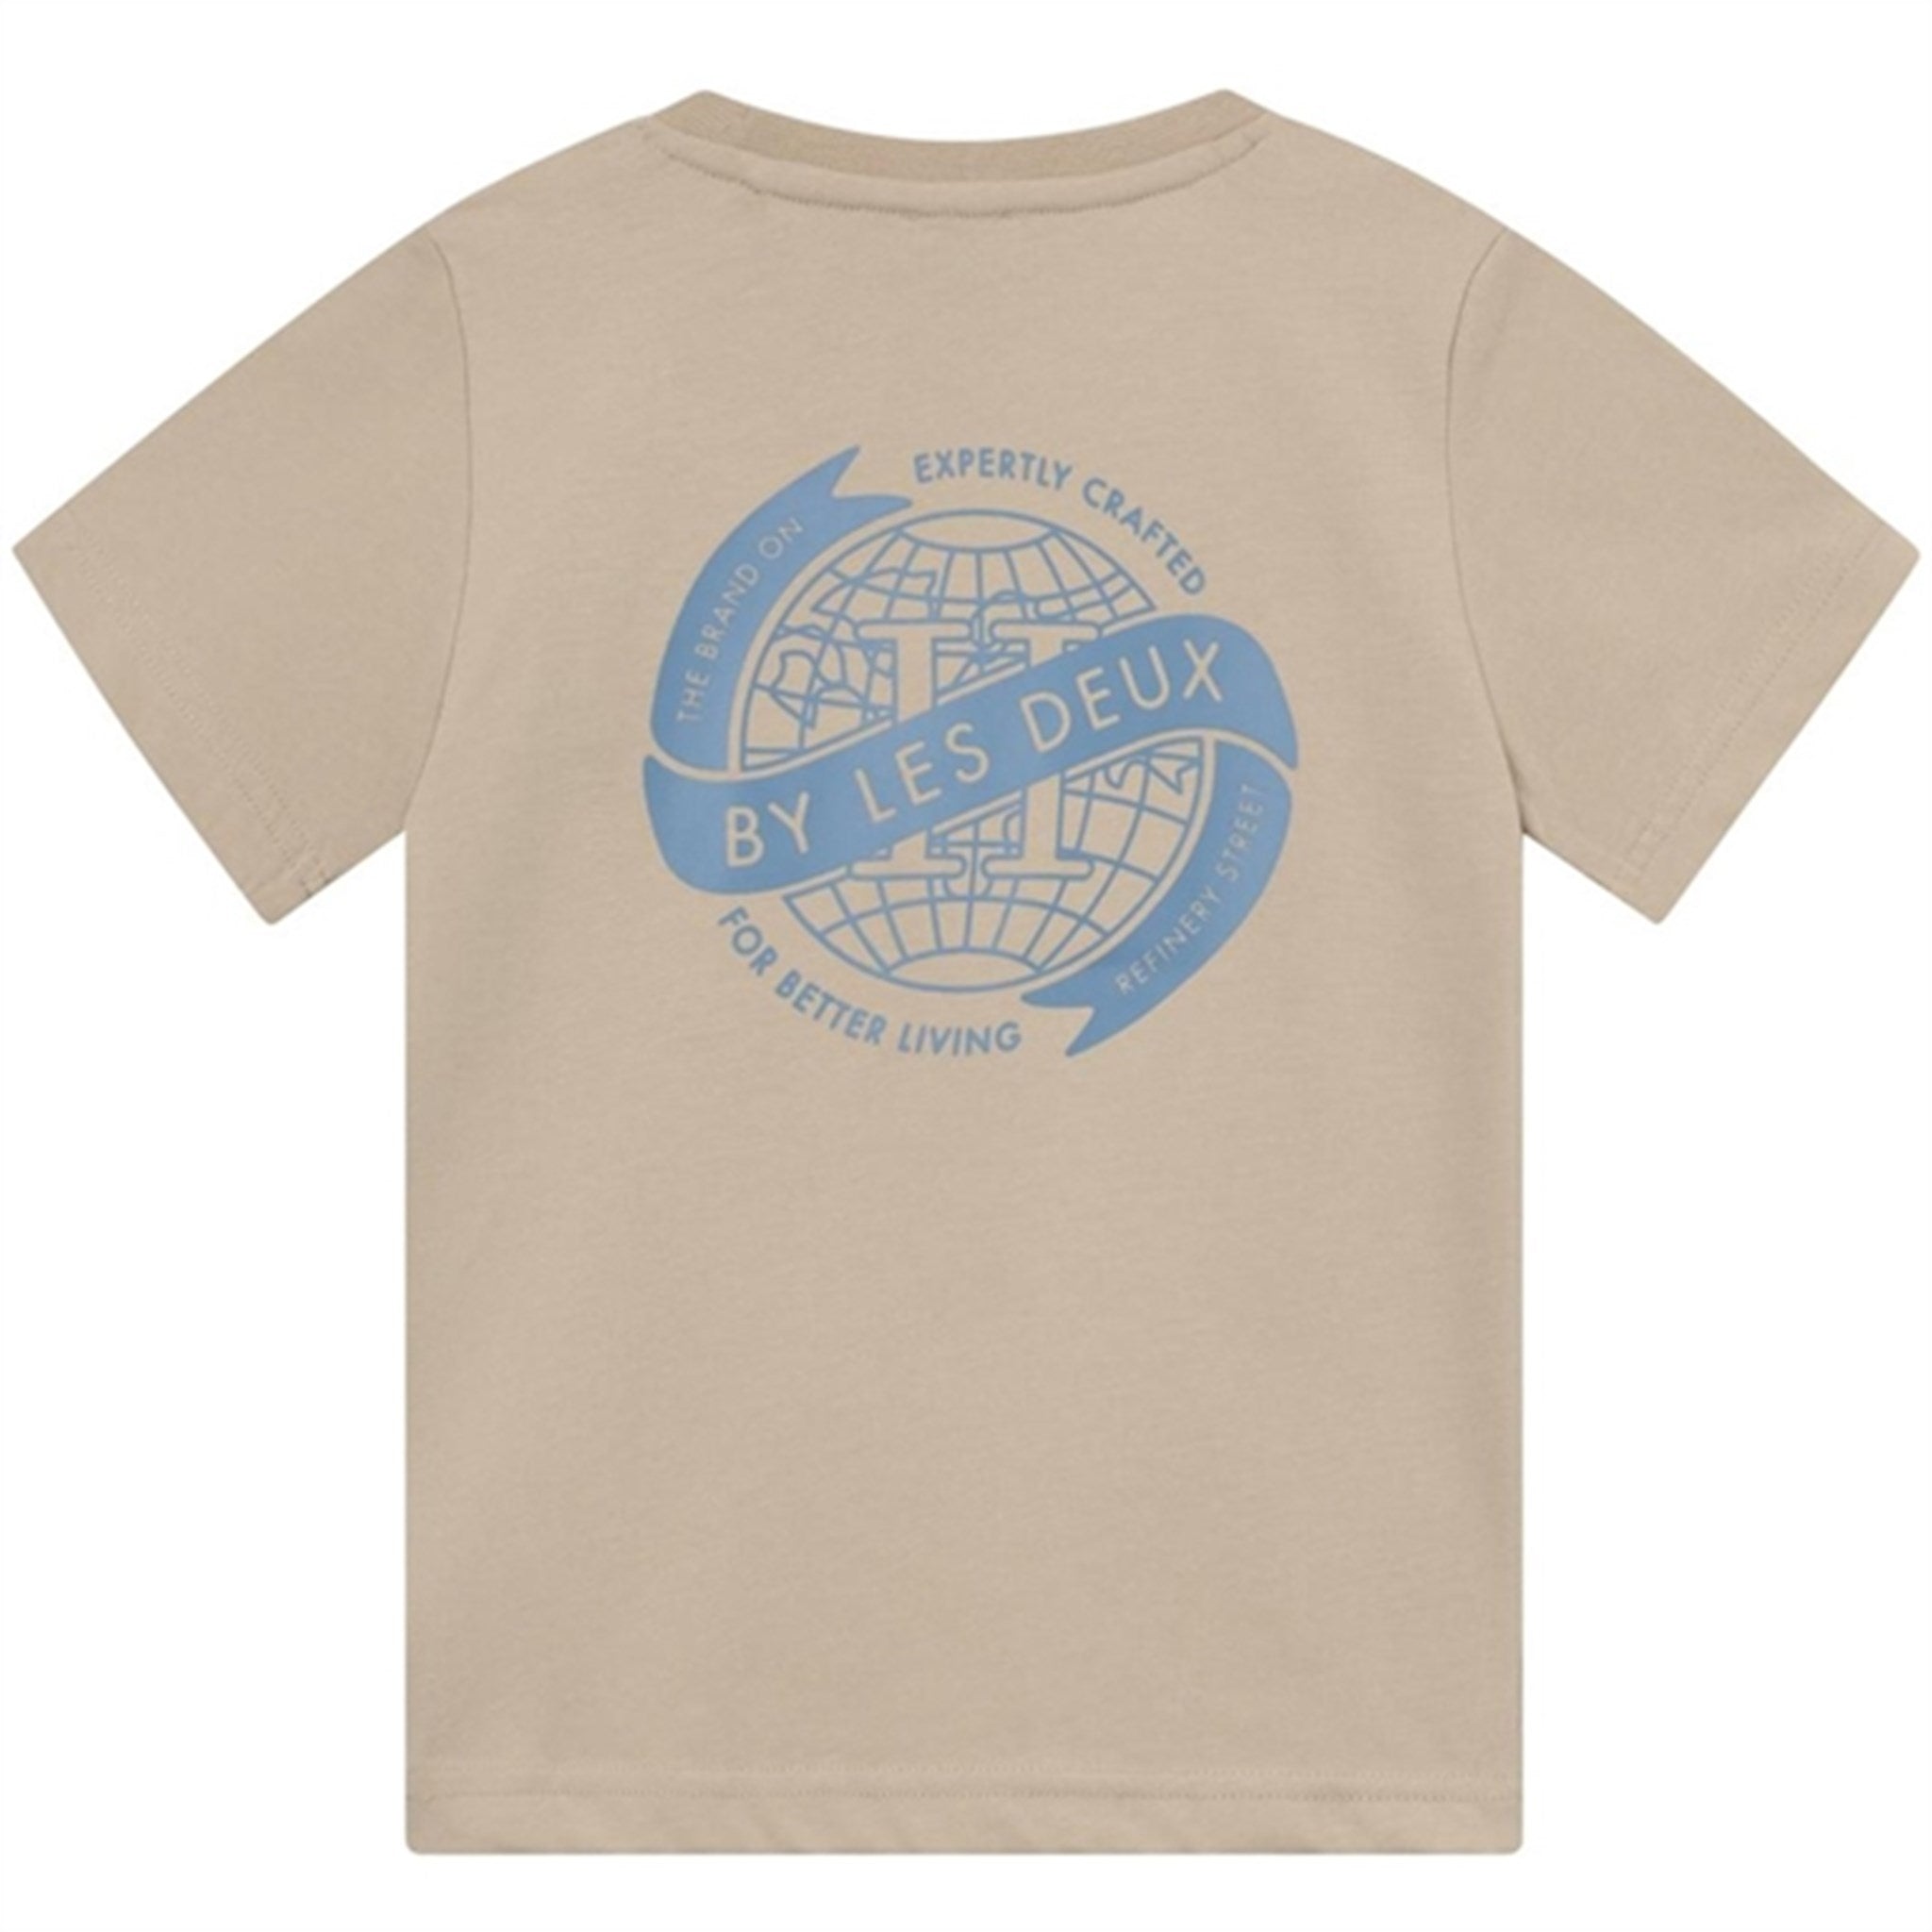 Les Deux Kids Light Desert Sand/Washed Denim Blue Globe T-Shirt 4